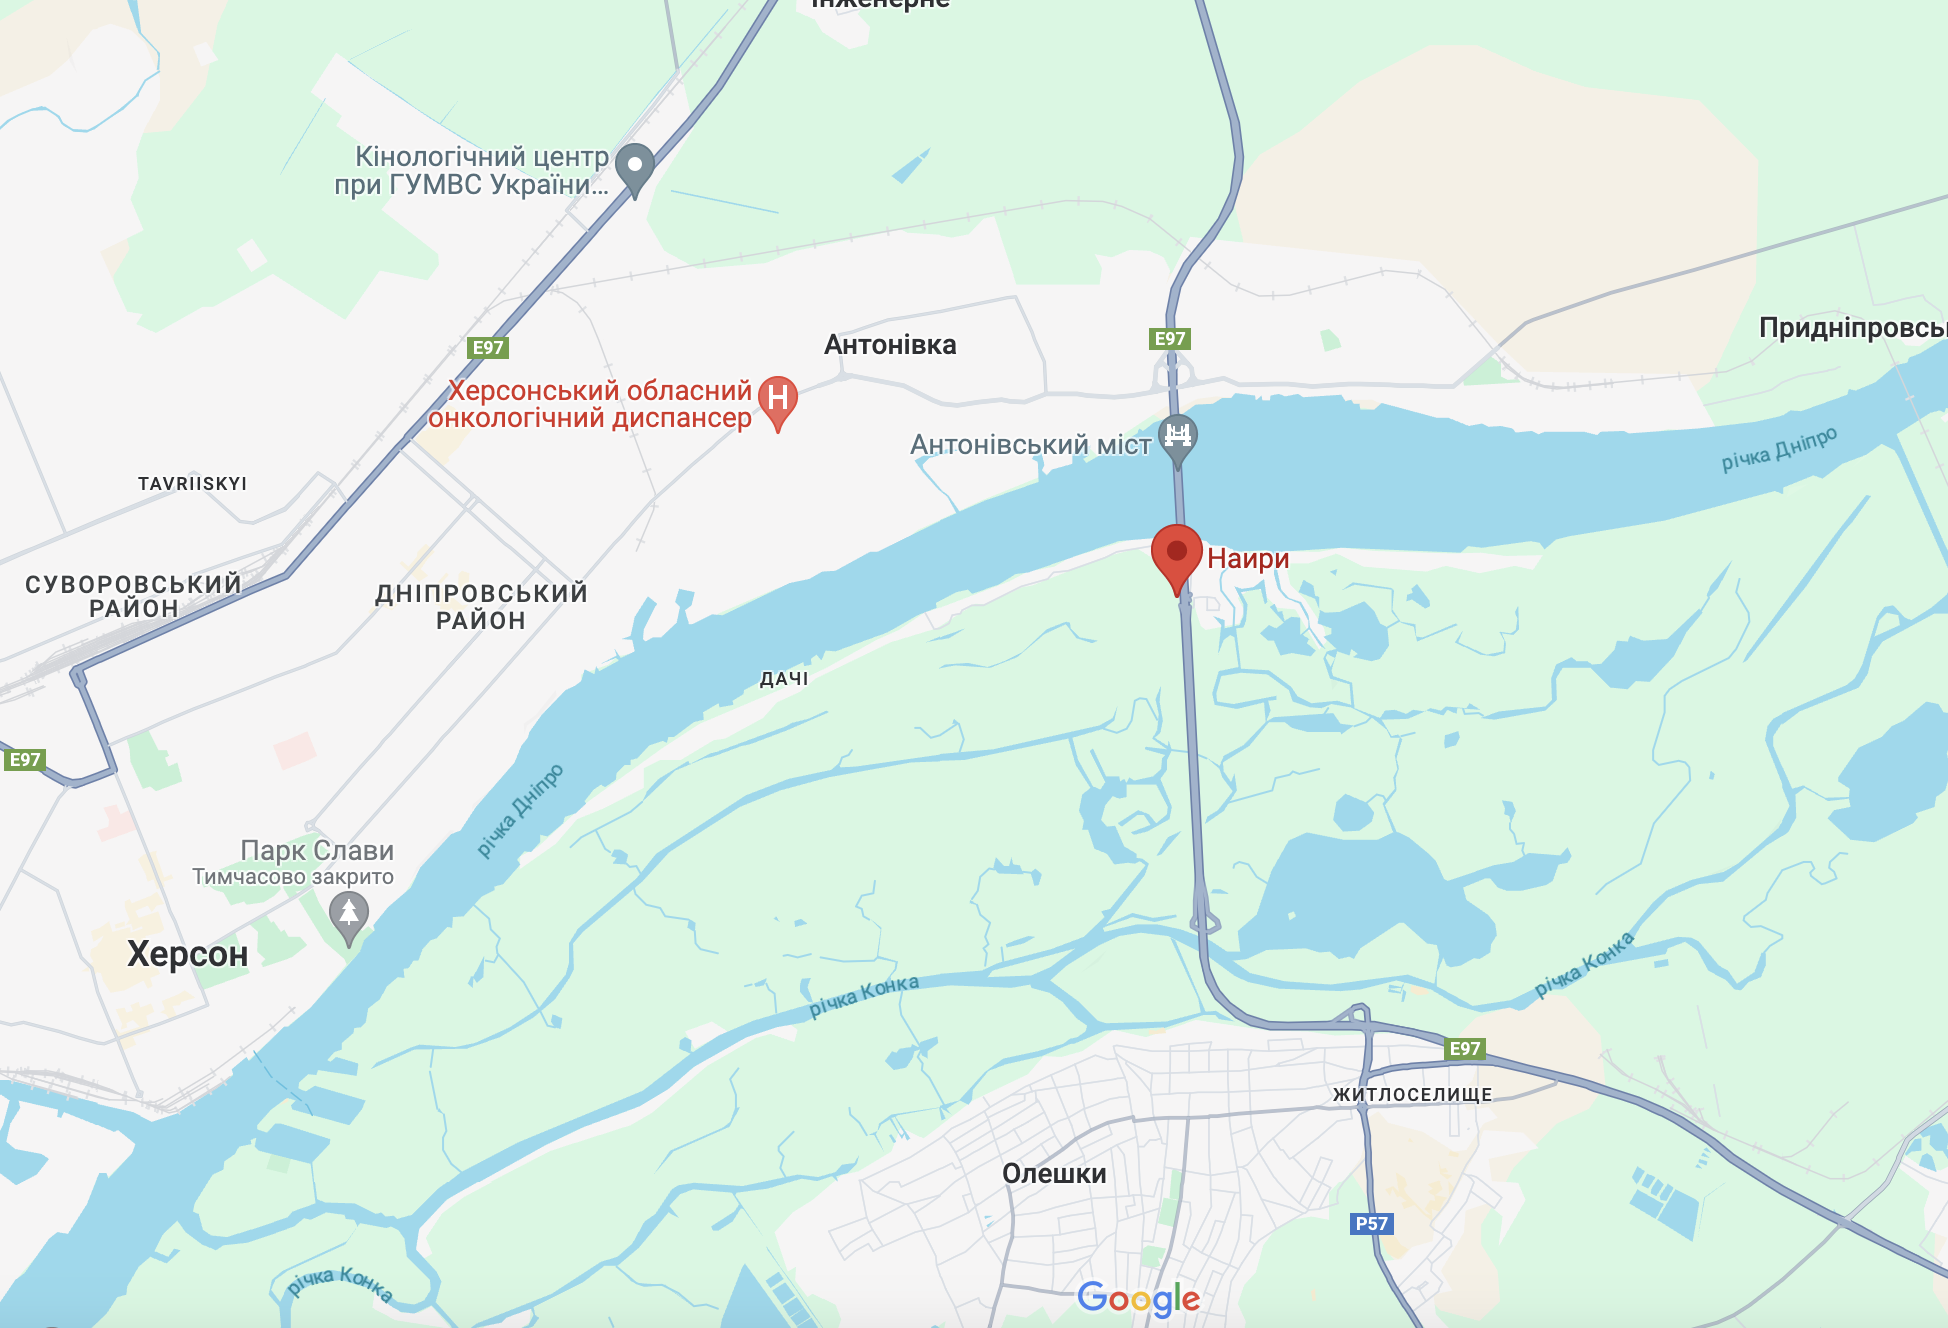 Значительную роль сыграли пограничники: в МВД показали кадры уникальной спецоперации на левом берегу Днепра. Видео